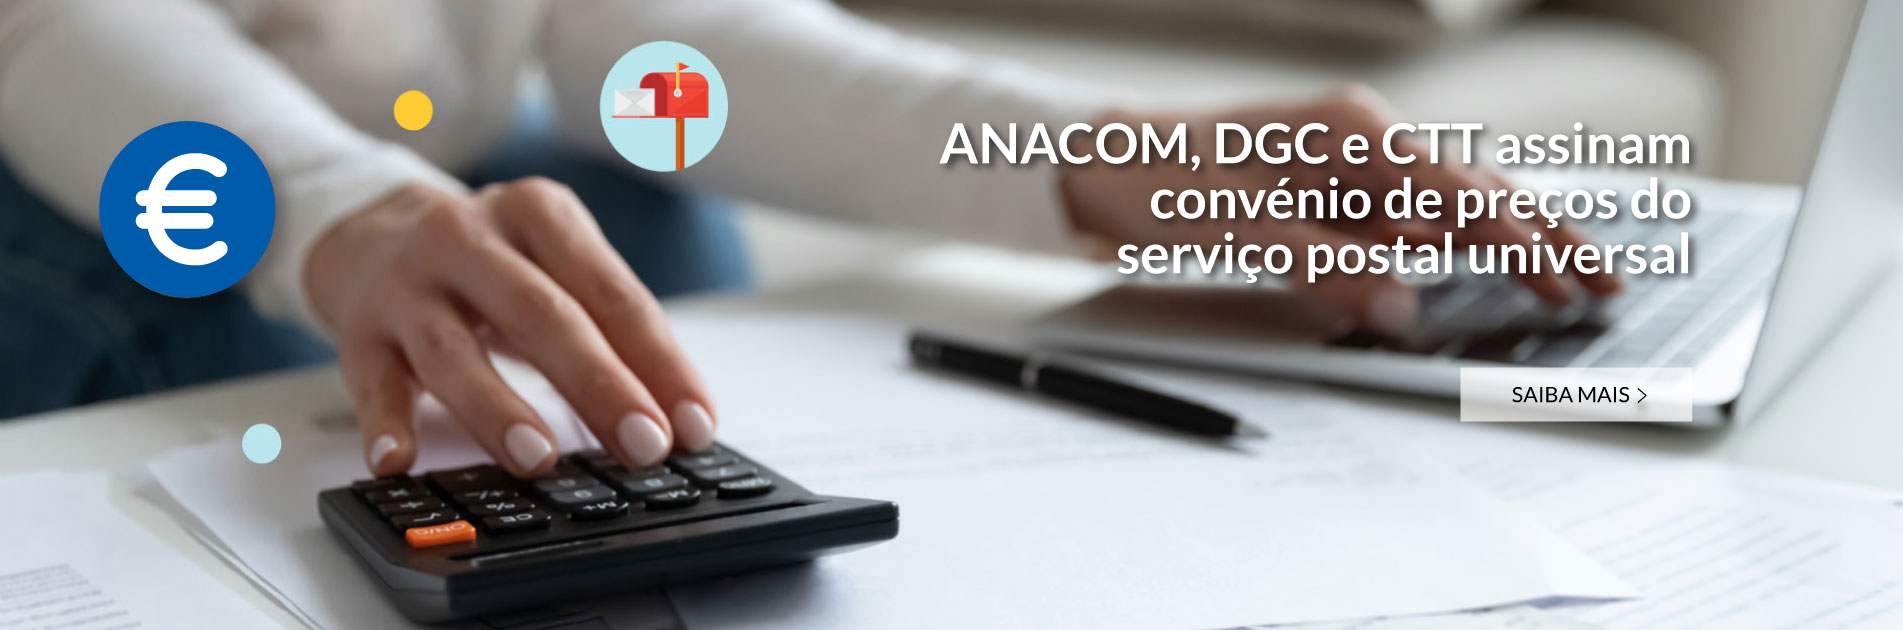 ANACOM, DGC e CTT assinam convénio de preços do serviço postal universal